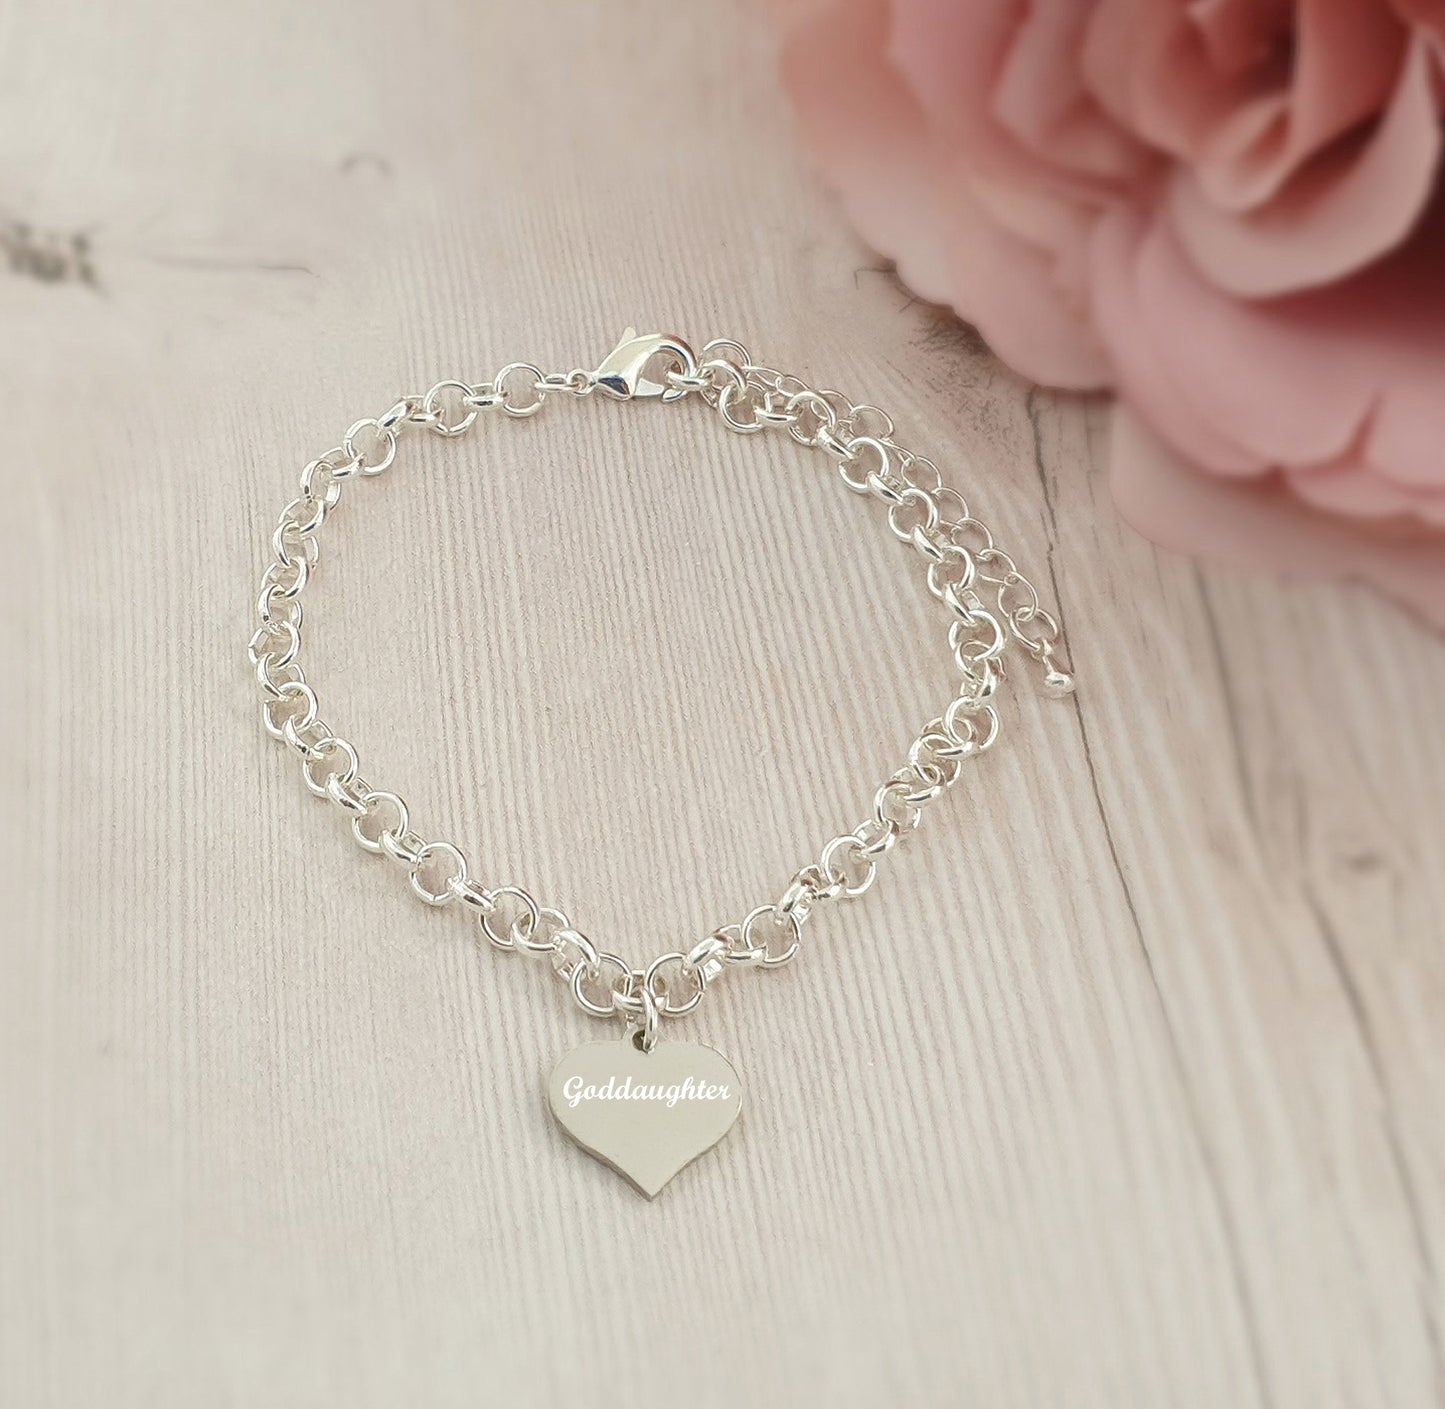 Goddaughter Engraved Heart Charm Link Bracelet, Gift for Girl's and Women